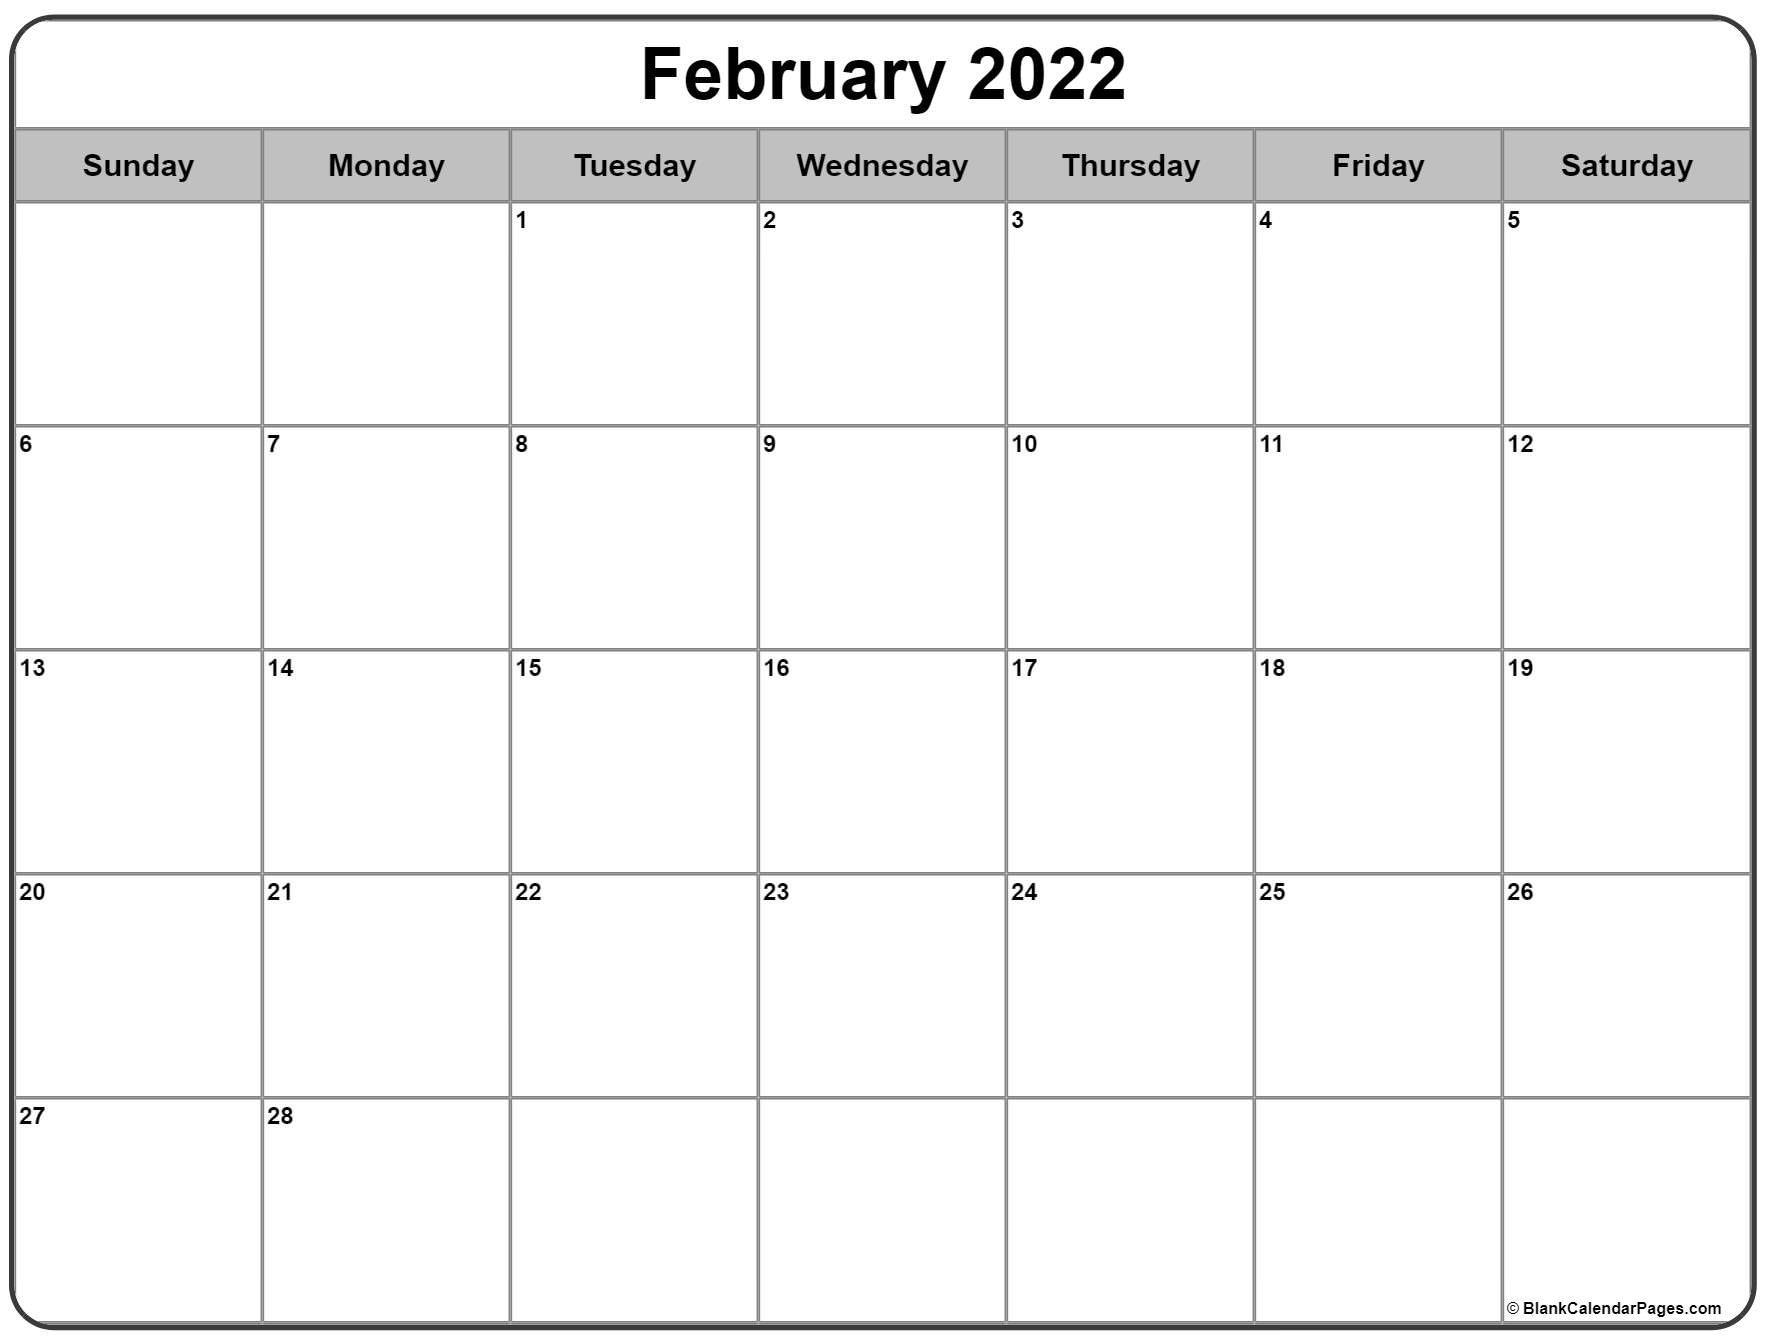 February 2022 Calendar | Free Printable Calendar Templates